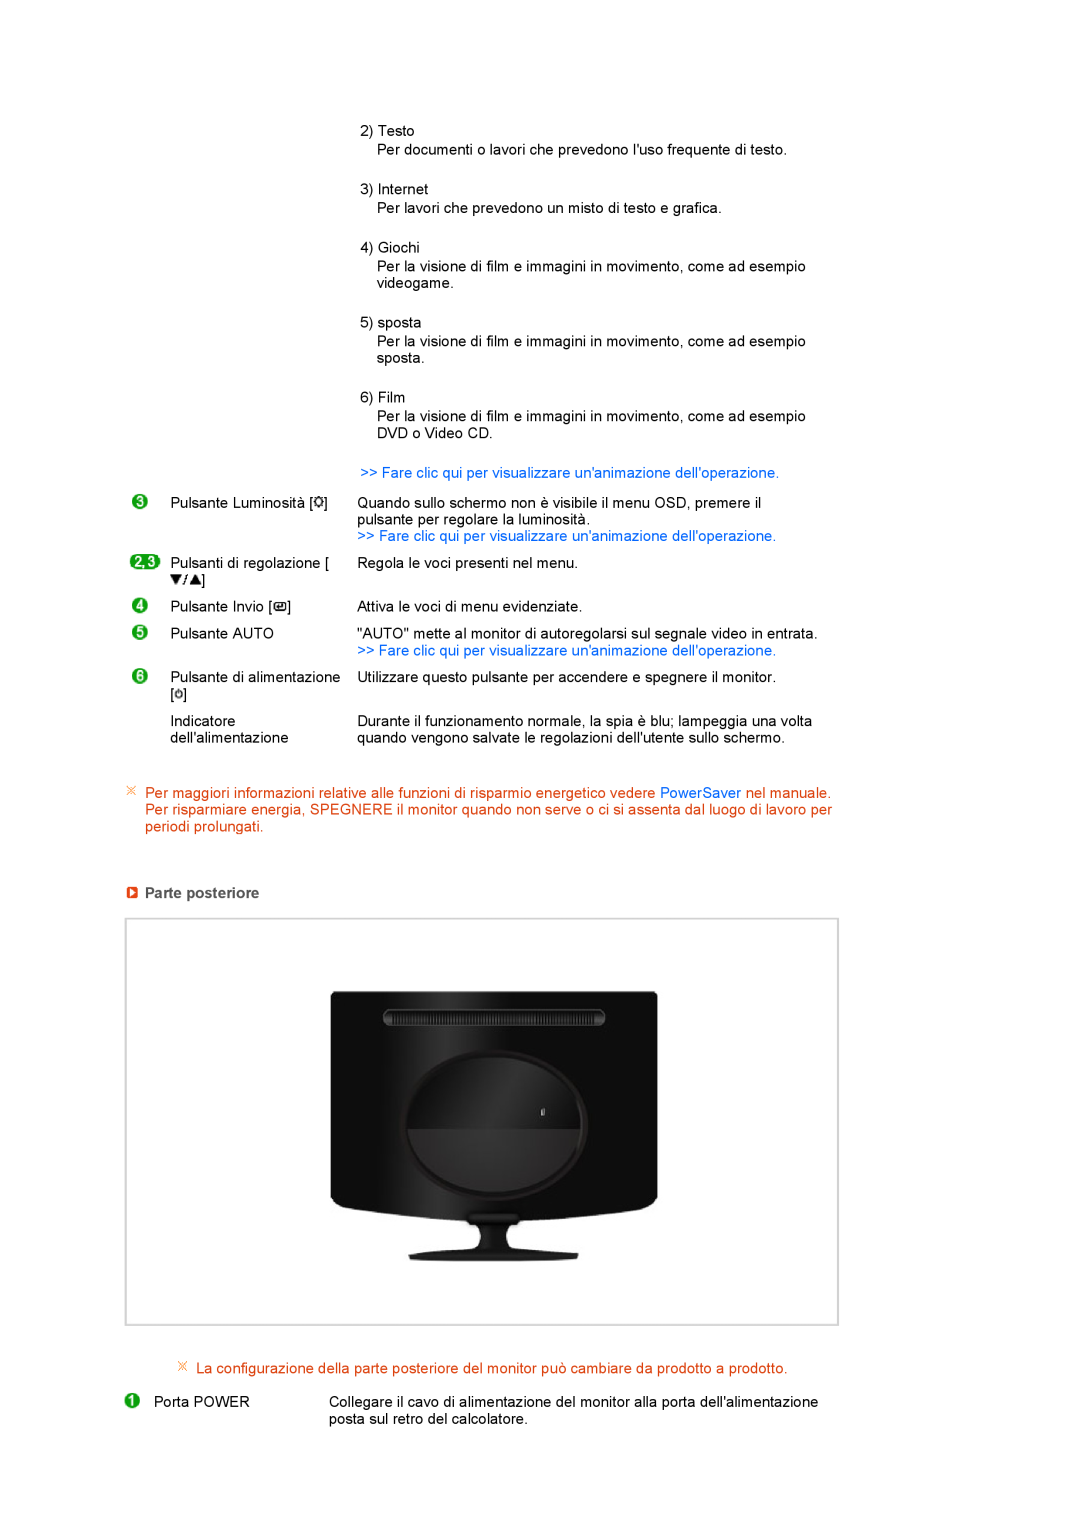 Samsung LS17PENSF/CLT manual Fare clic qui per visualizzare unanimazione delloperazione, Parte posteriore 